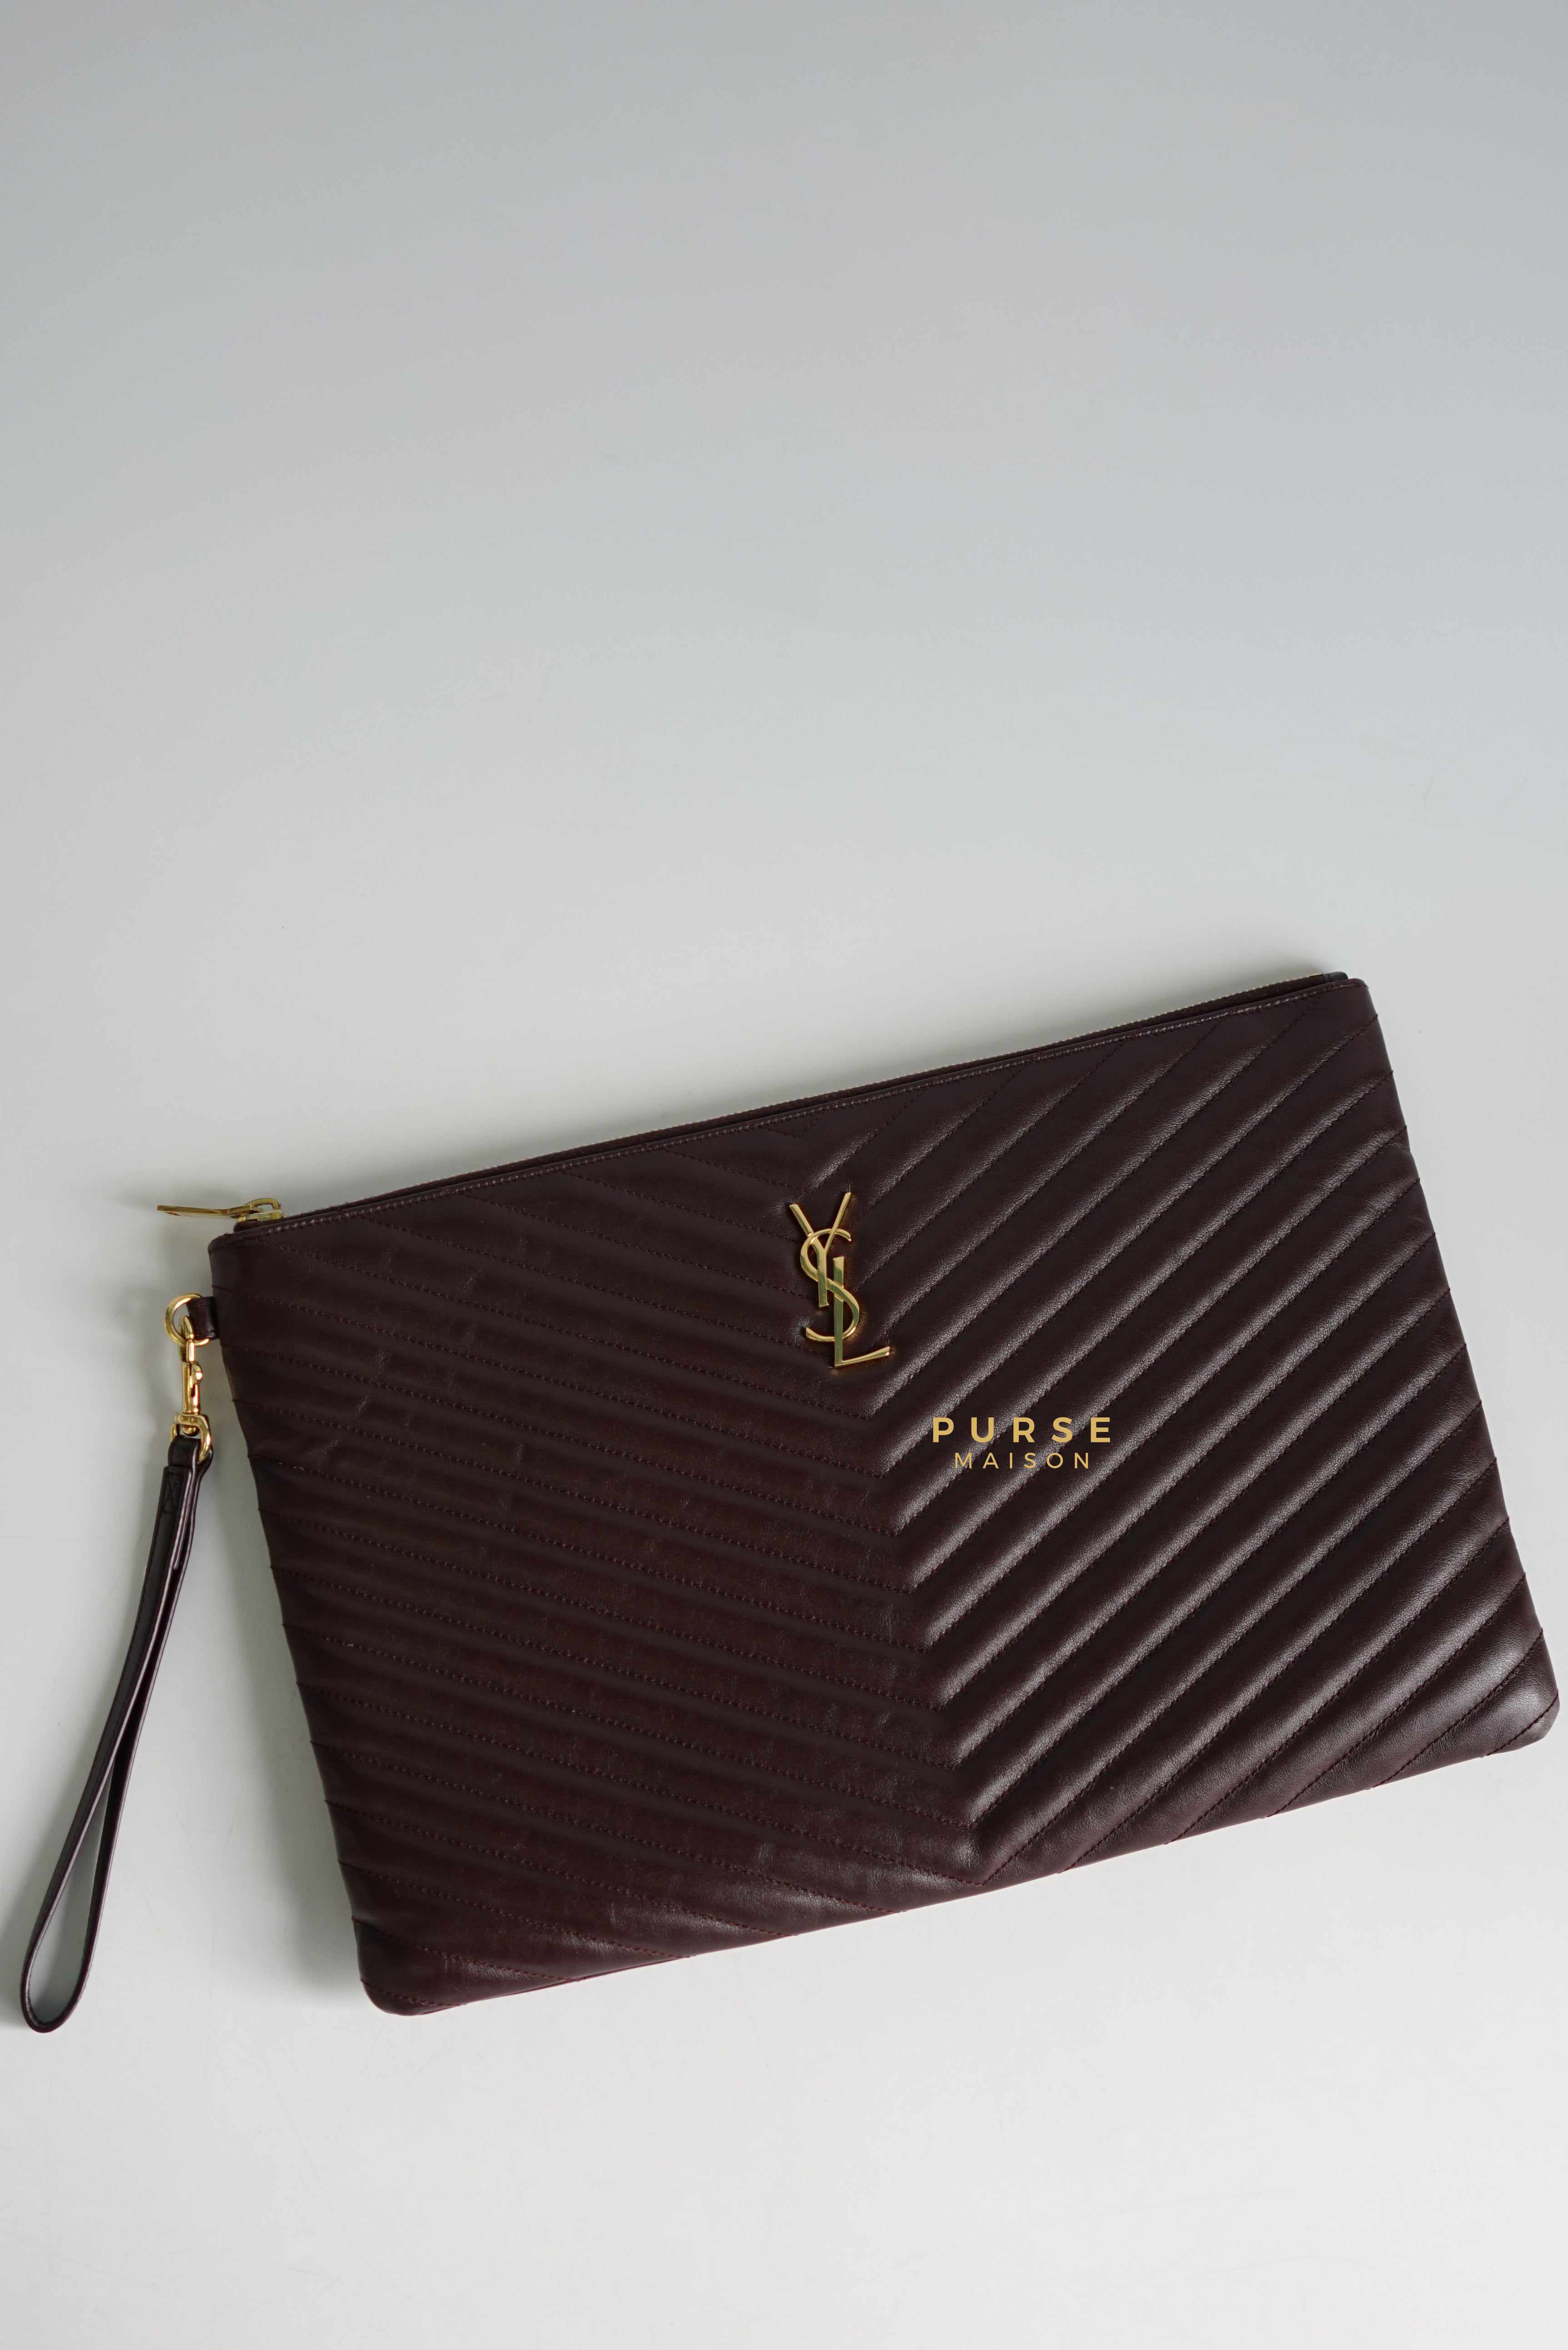 YSL Rouge Legion Large Wristlet Pouch | Purse Maison Luxury Bags Shop